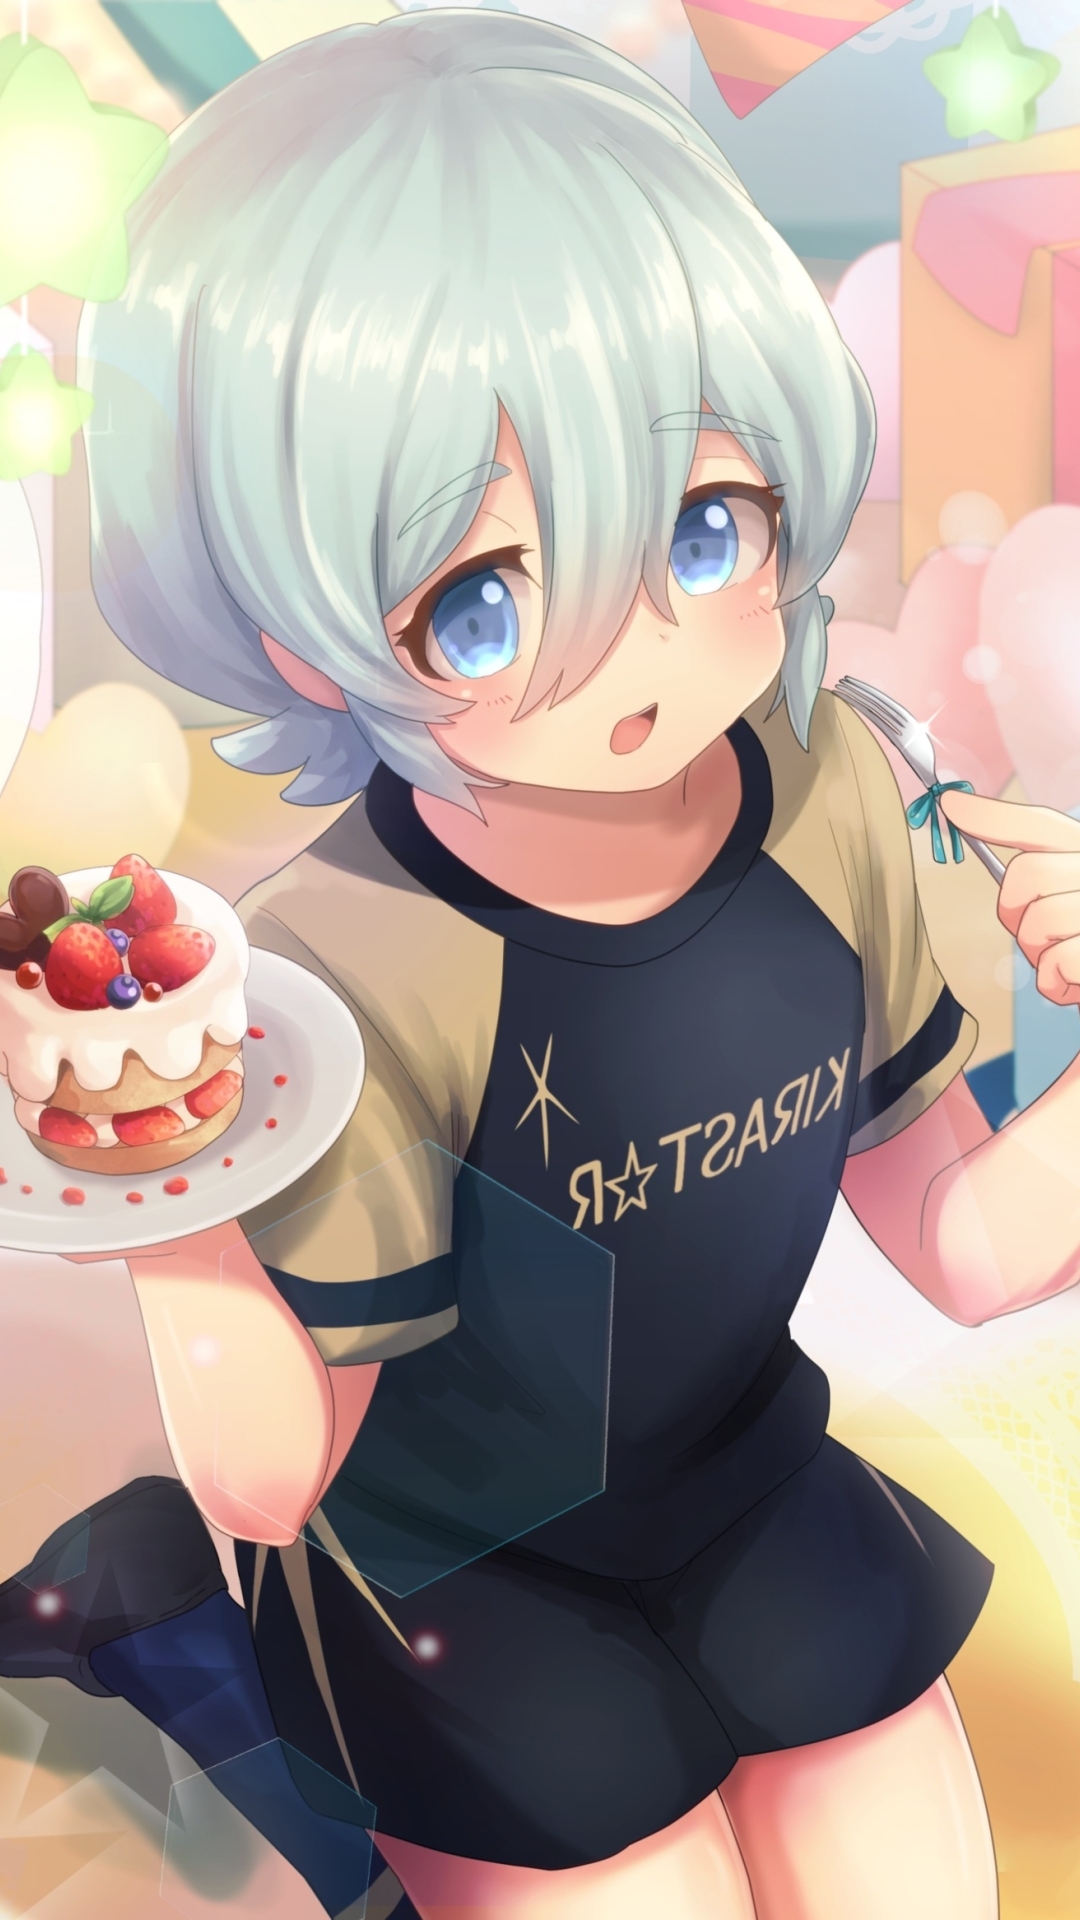 Inazuma eleven Cake #fypシ #cake #anime #inazumaeleven #inazuma #super1